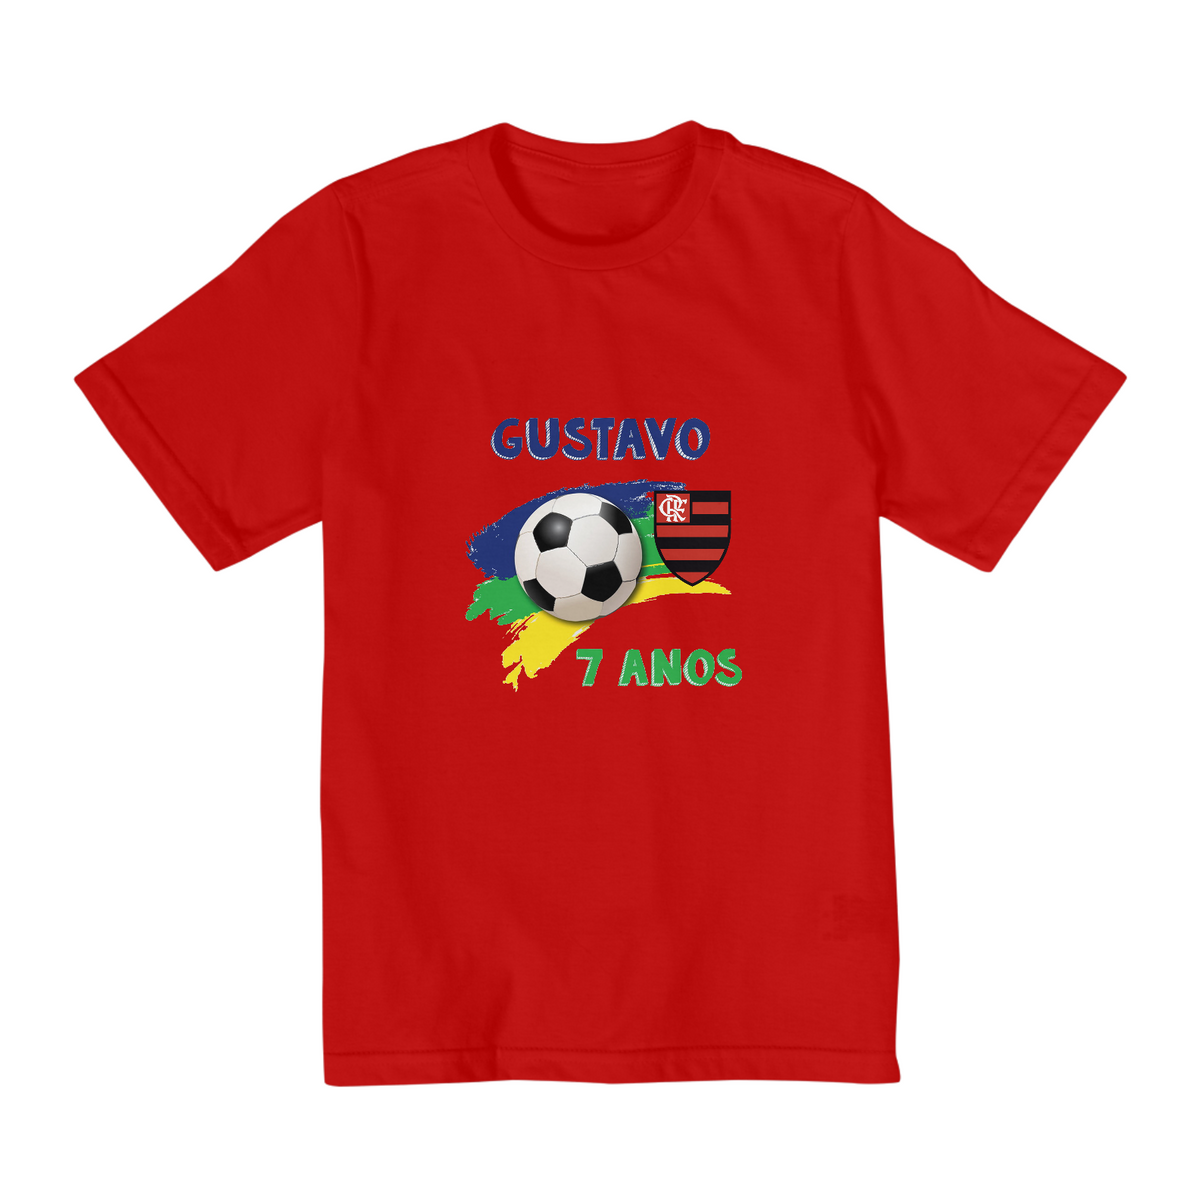 Nome do produto: Blusa Infantil - Futebol